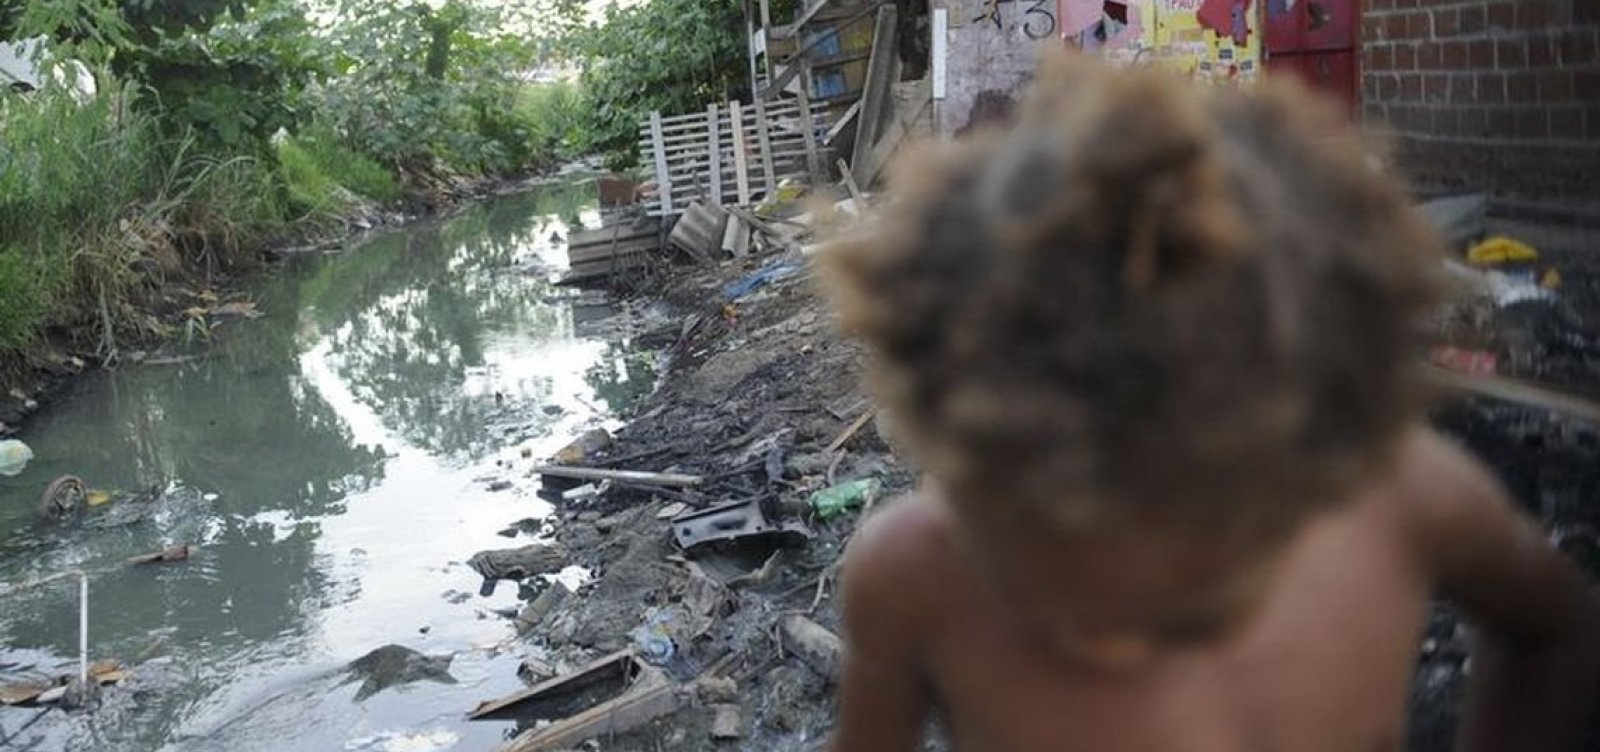 Quase metade da população baiana não tem acesso a saneamento básico, diz IBGE